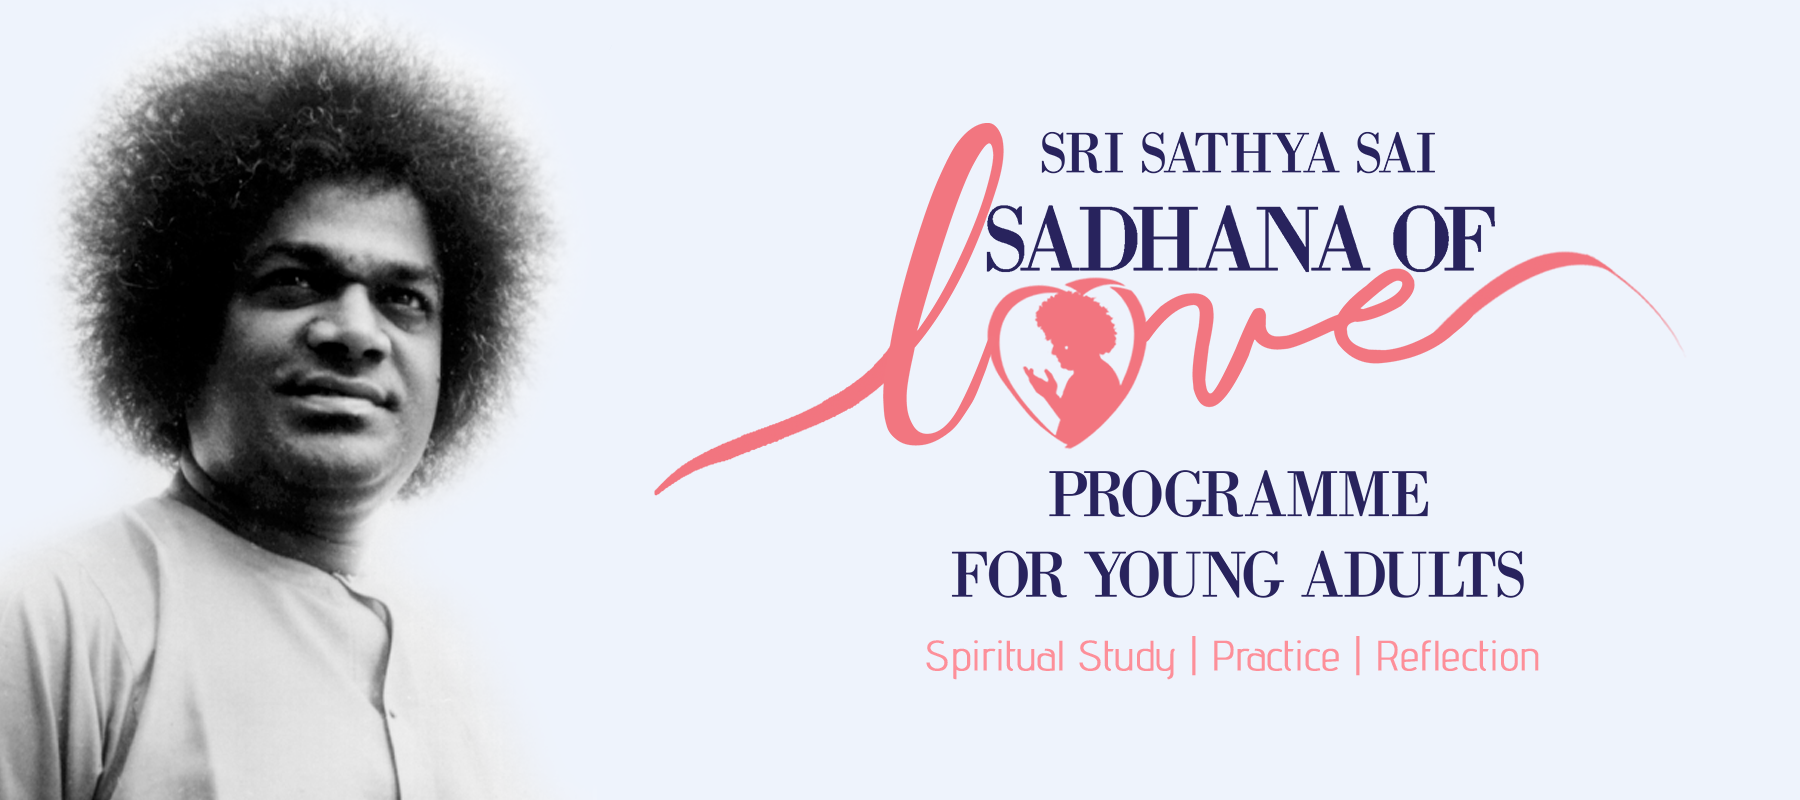 Sri Sathya Sai Sadhana of Love | Sri Sathya Sai International ...